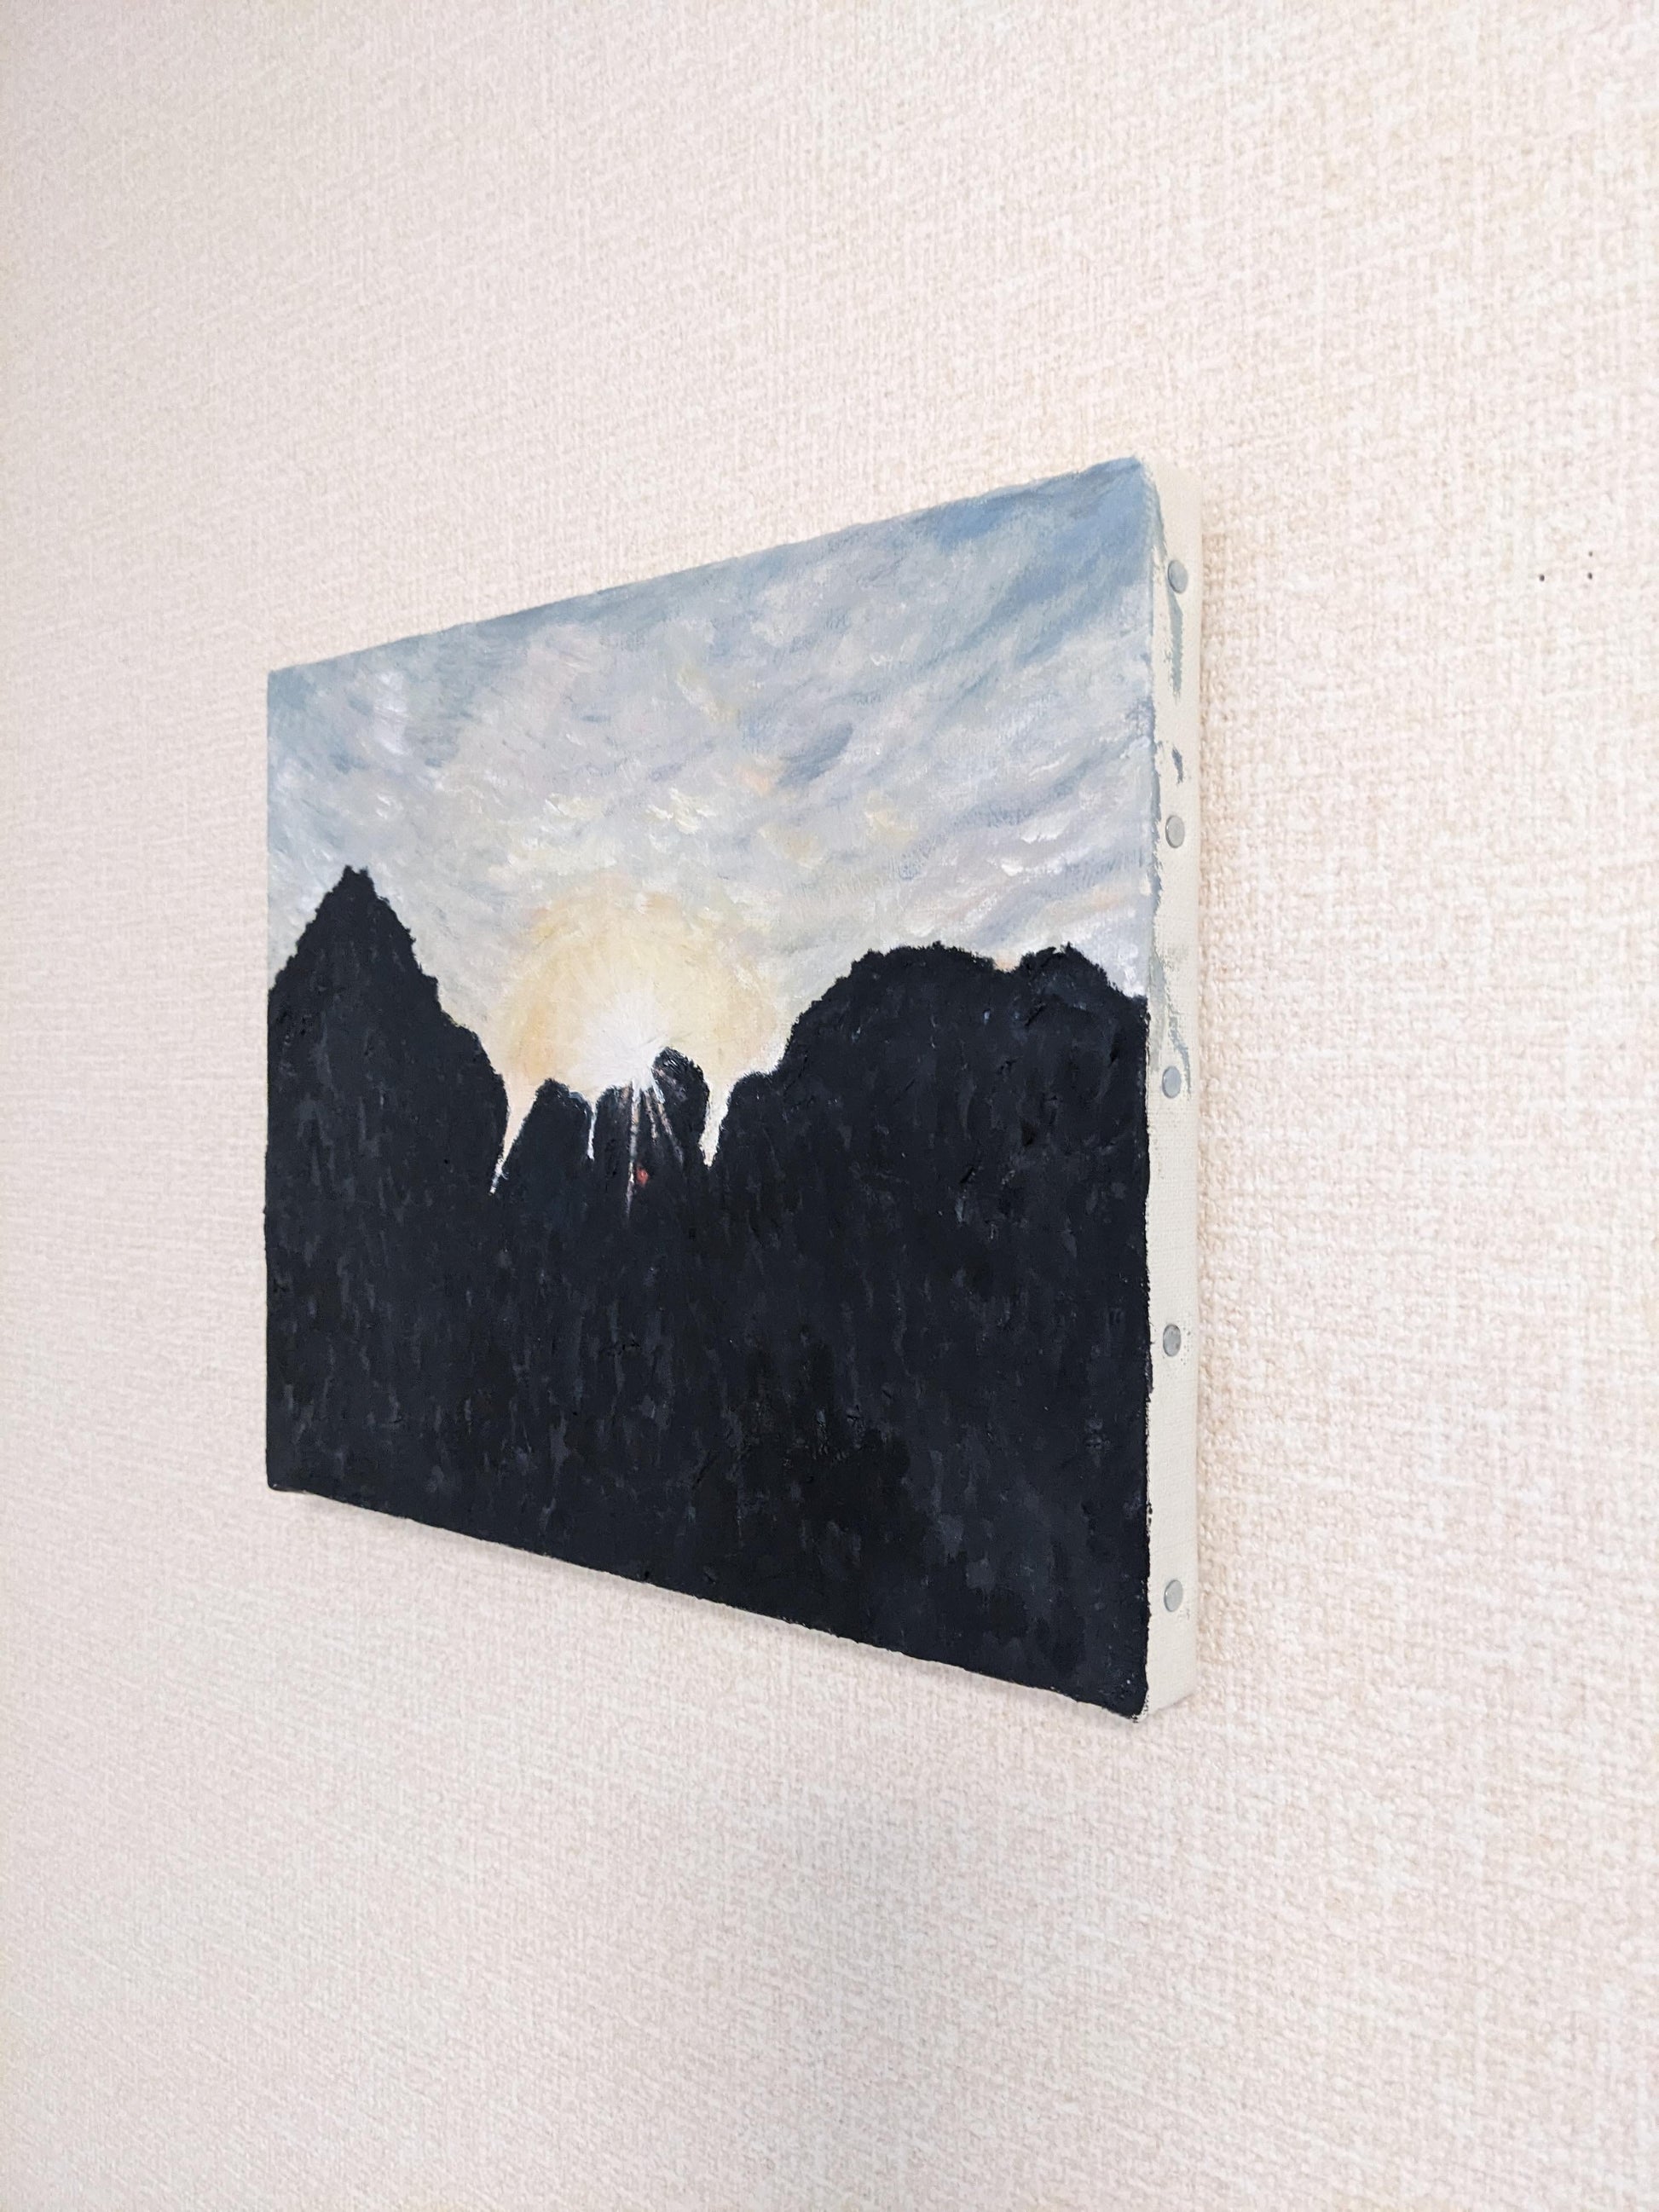 『沖縄の岩と光（Rocks and the light in Okinawa）』 - FROM ARTIST